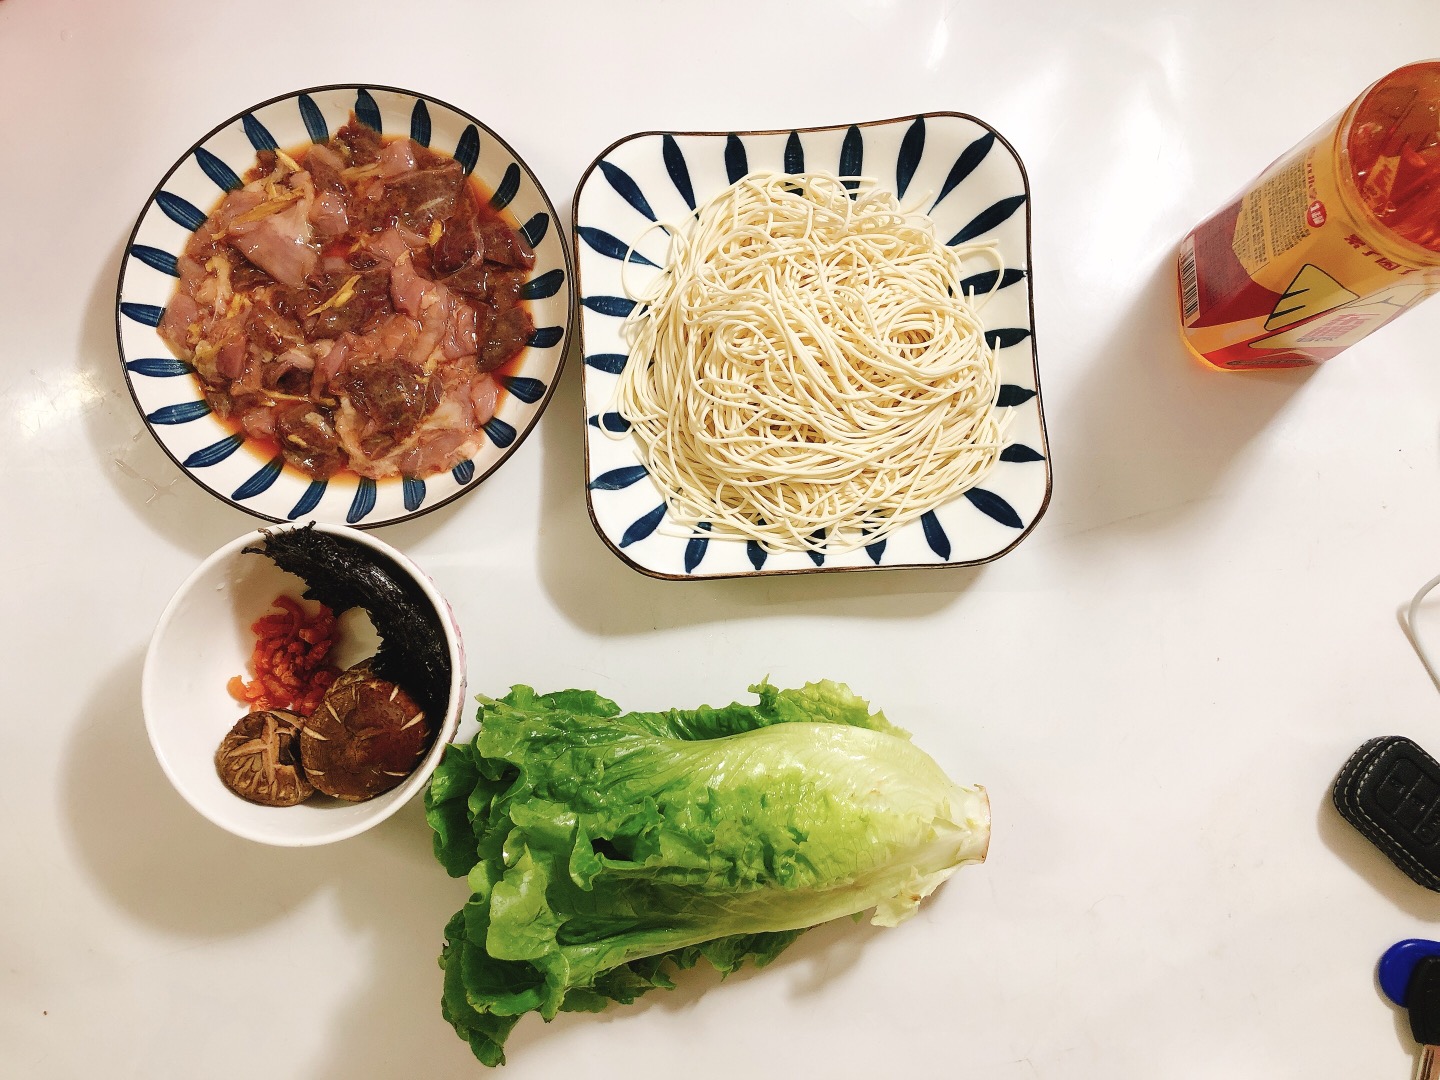 有空做饭,家庭煮男上线,做饭打卡,一人食,广州